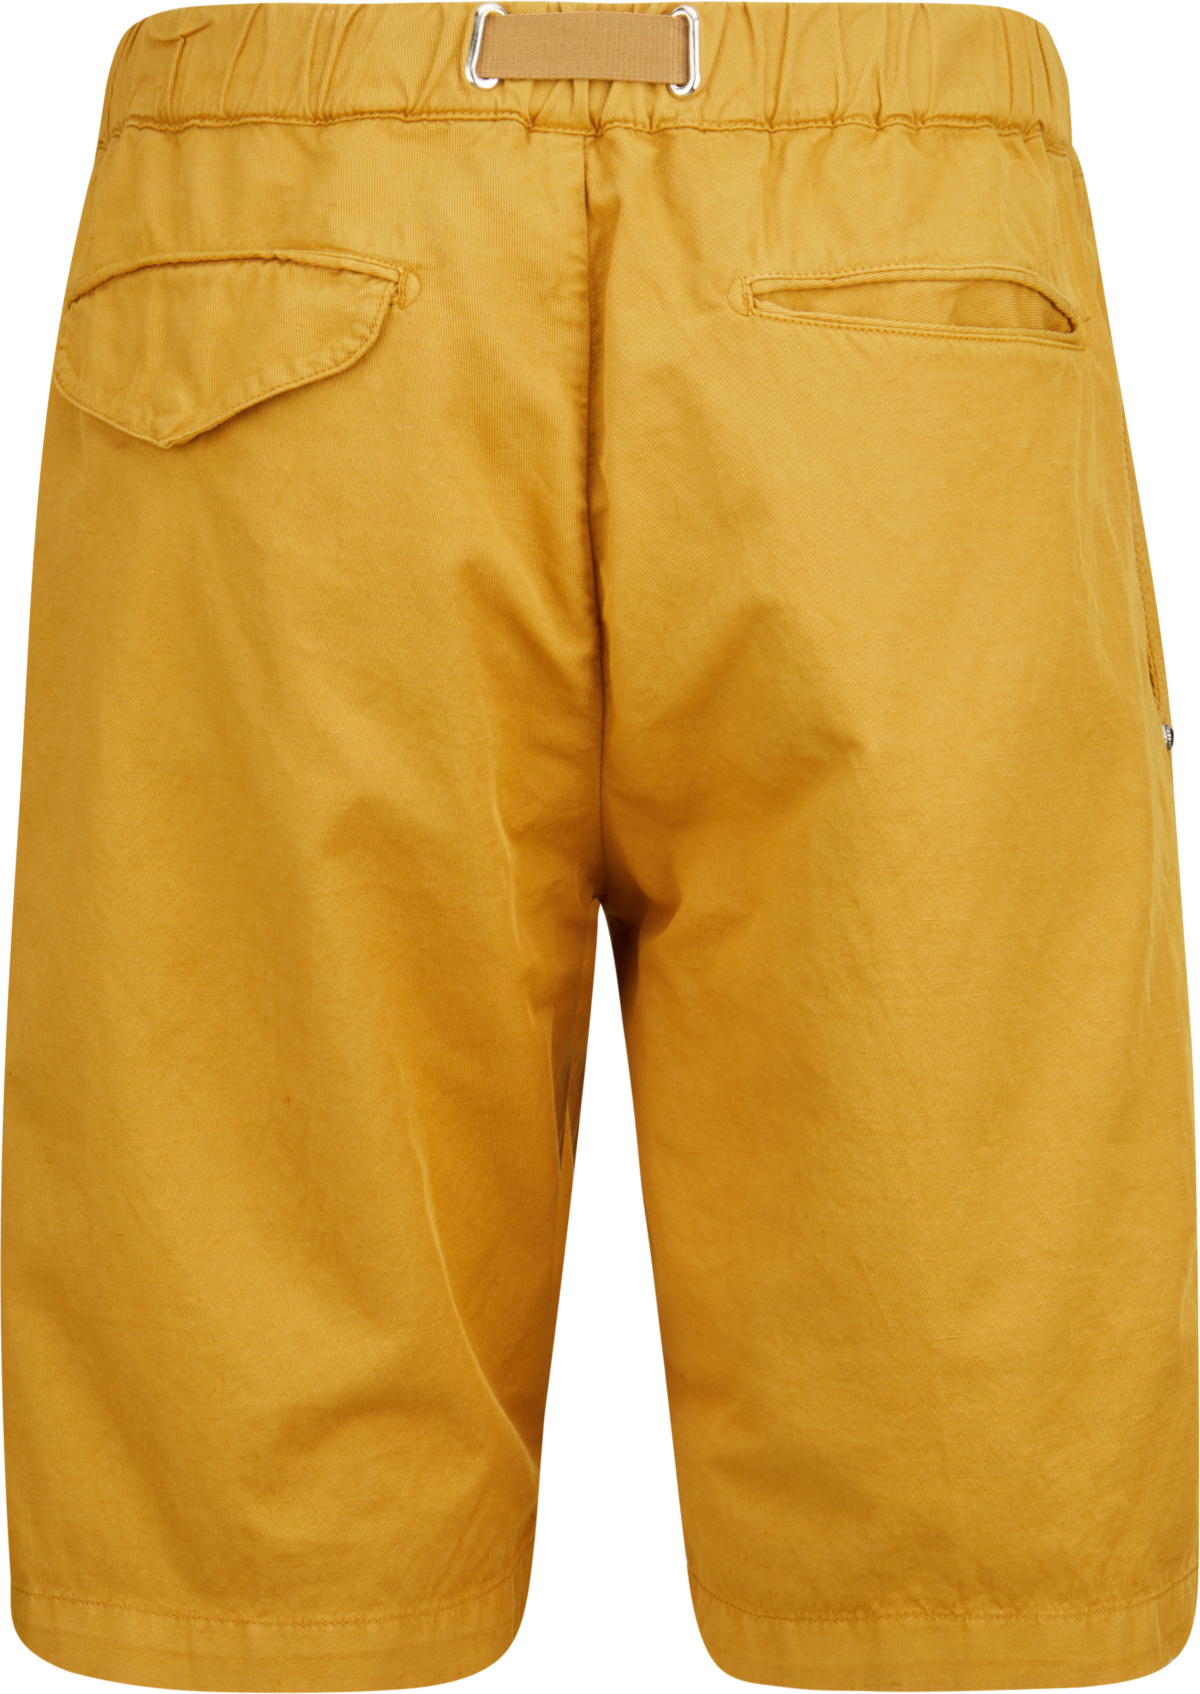 White Sand Shorts mit Leinen in Gelb 440261